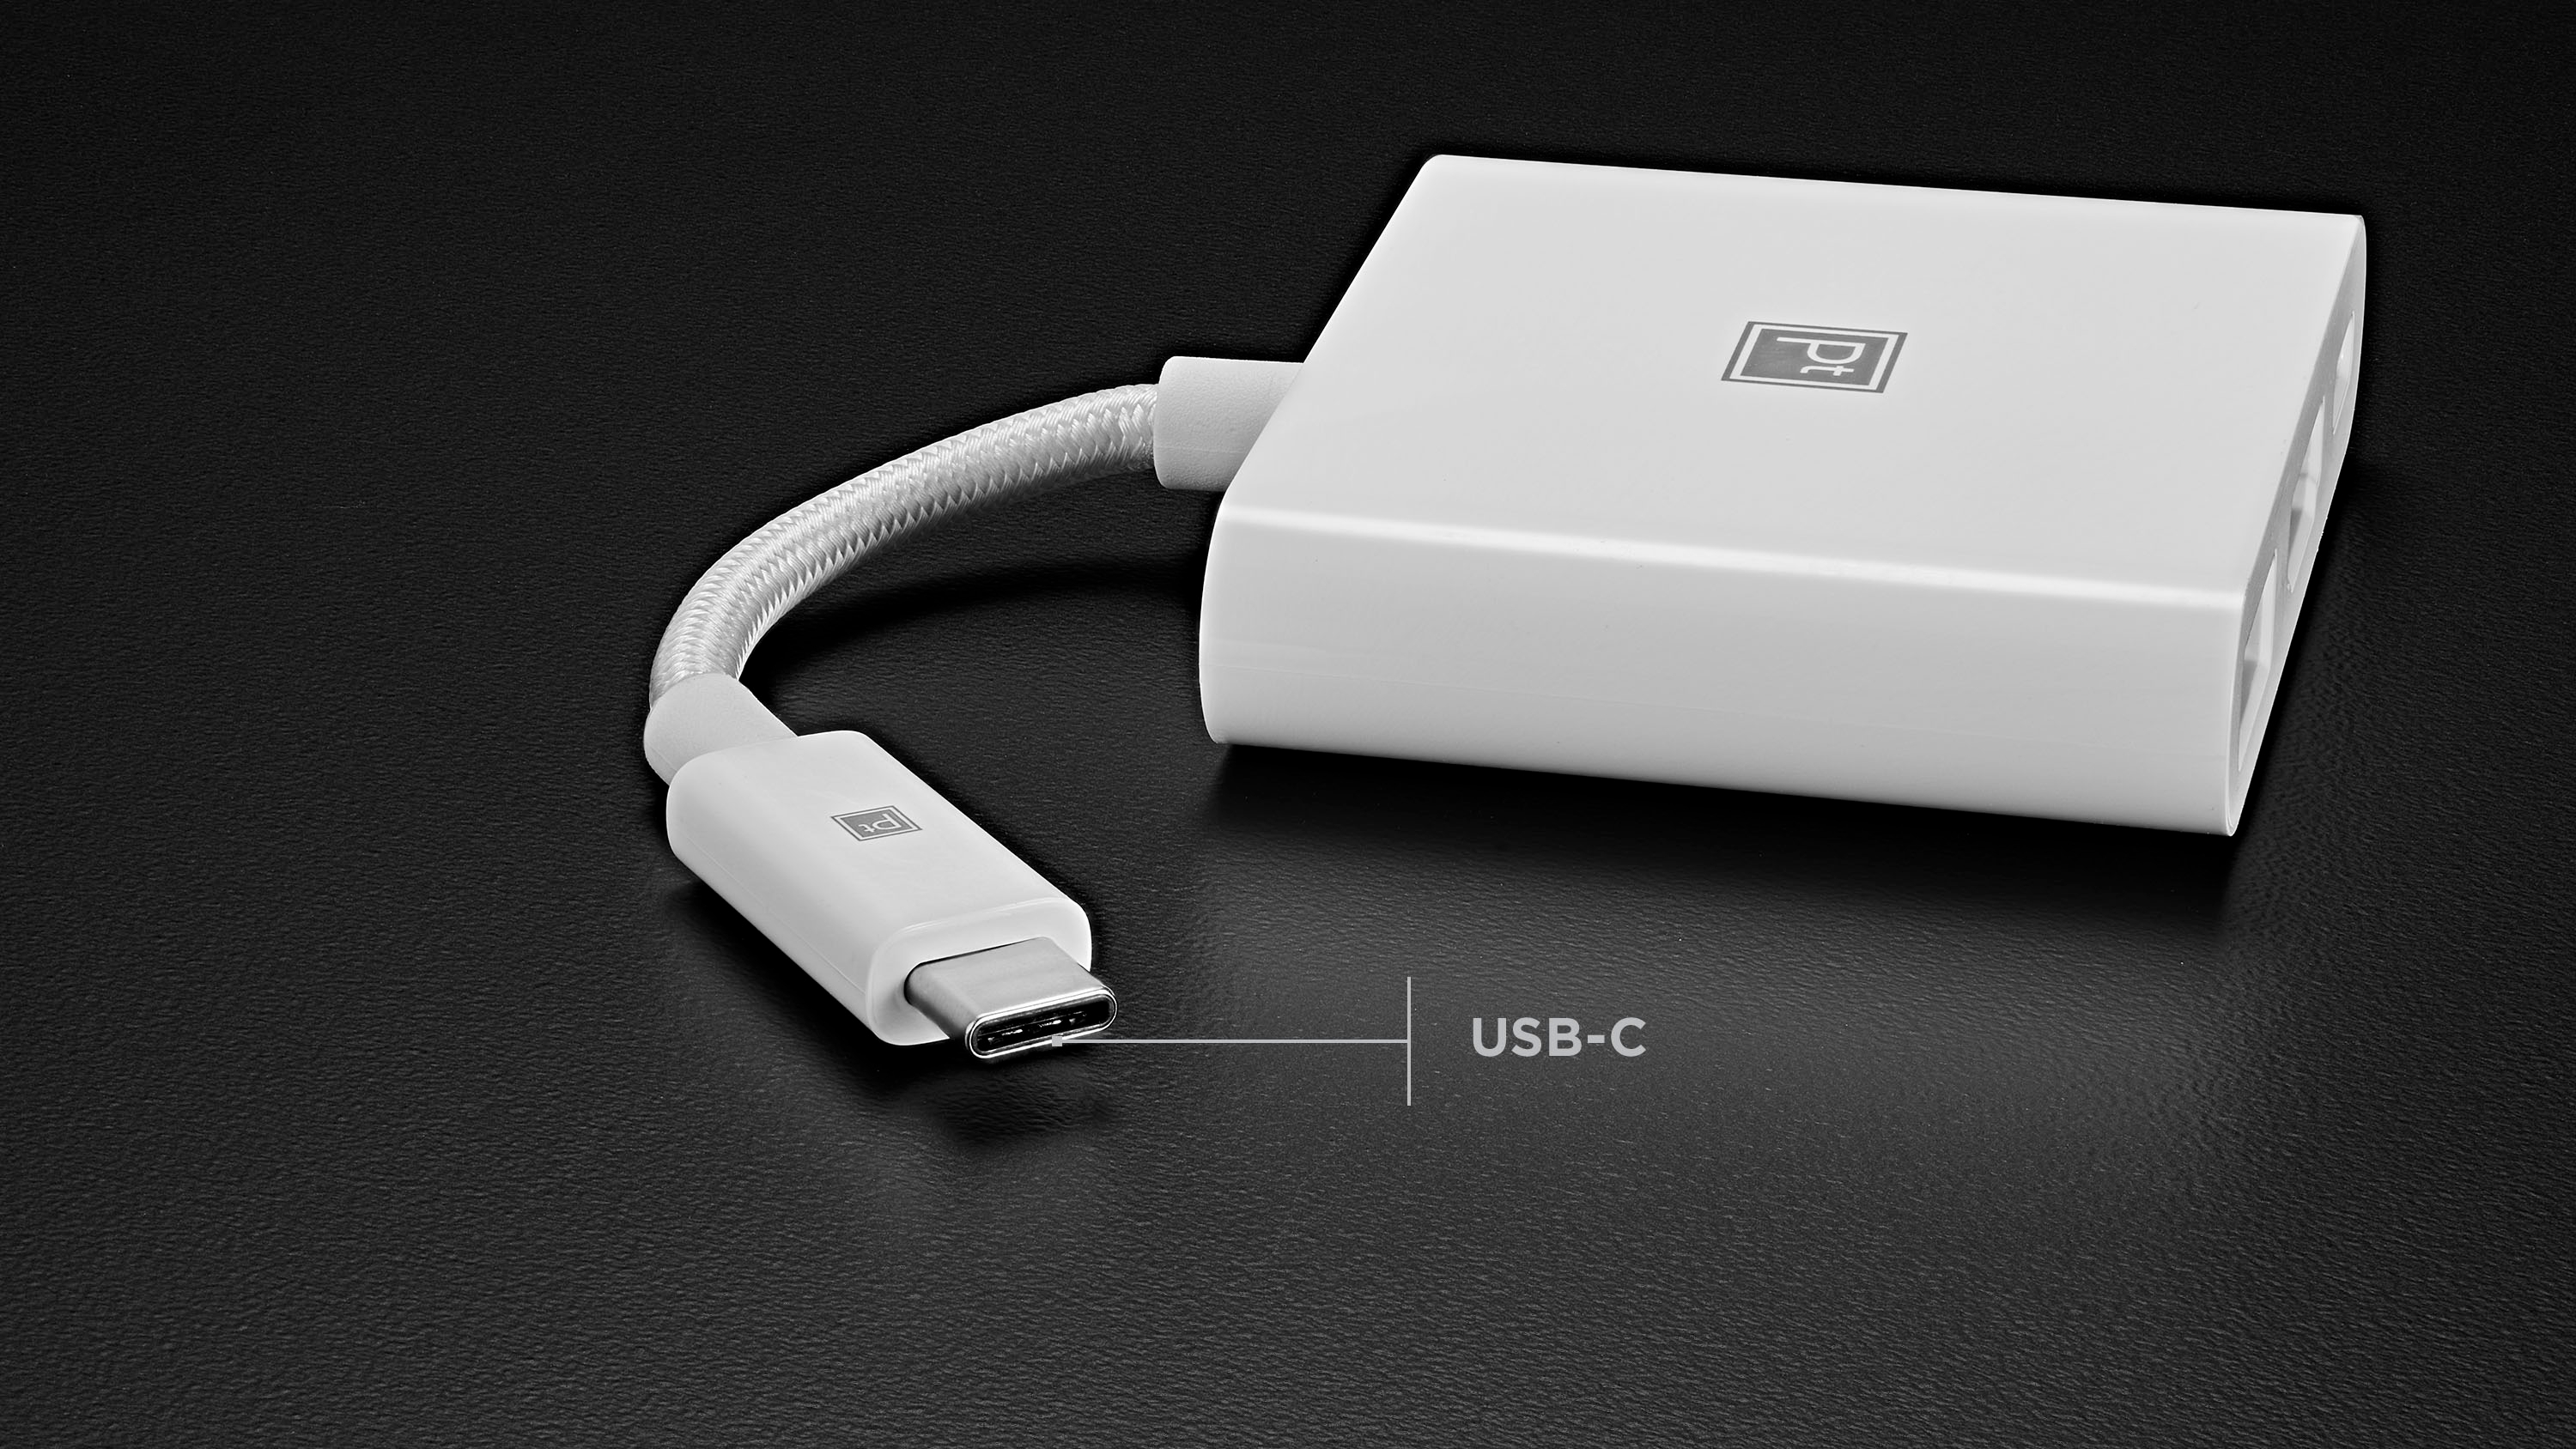 Apple Lightning Digital AV Adapter / Cable adaptador Lightning a HDMI y USB- C